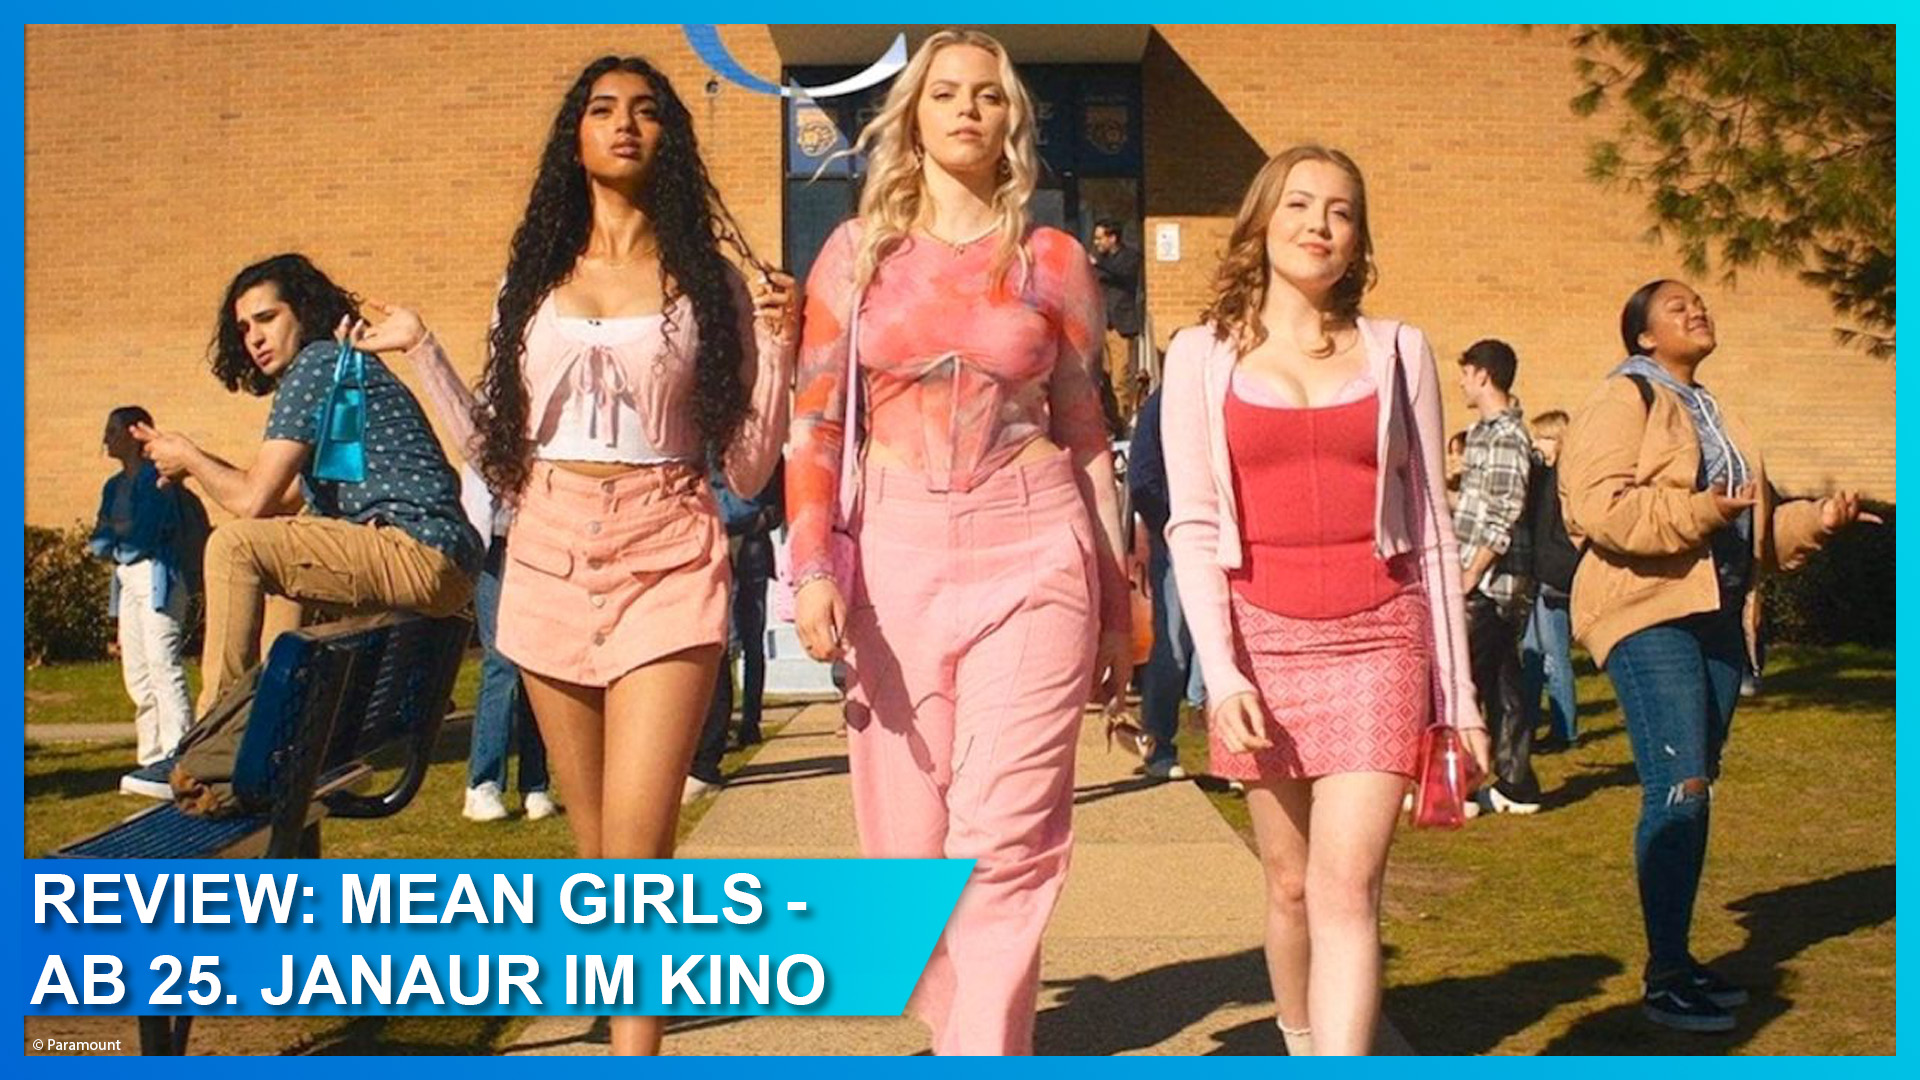 Review: “Mean Girls – Der Girls Club” als Musical – So fetch wie das Original?